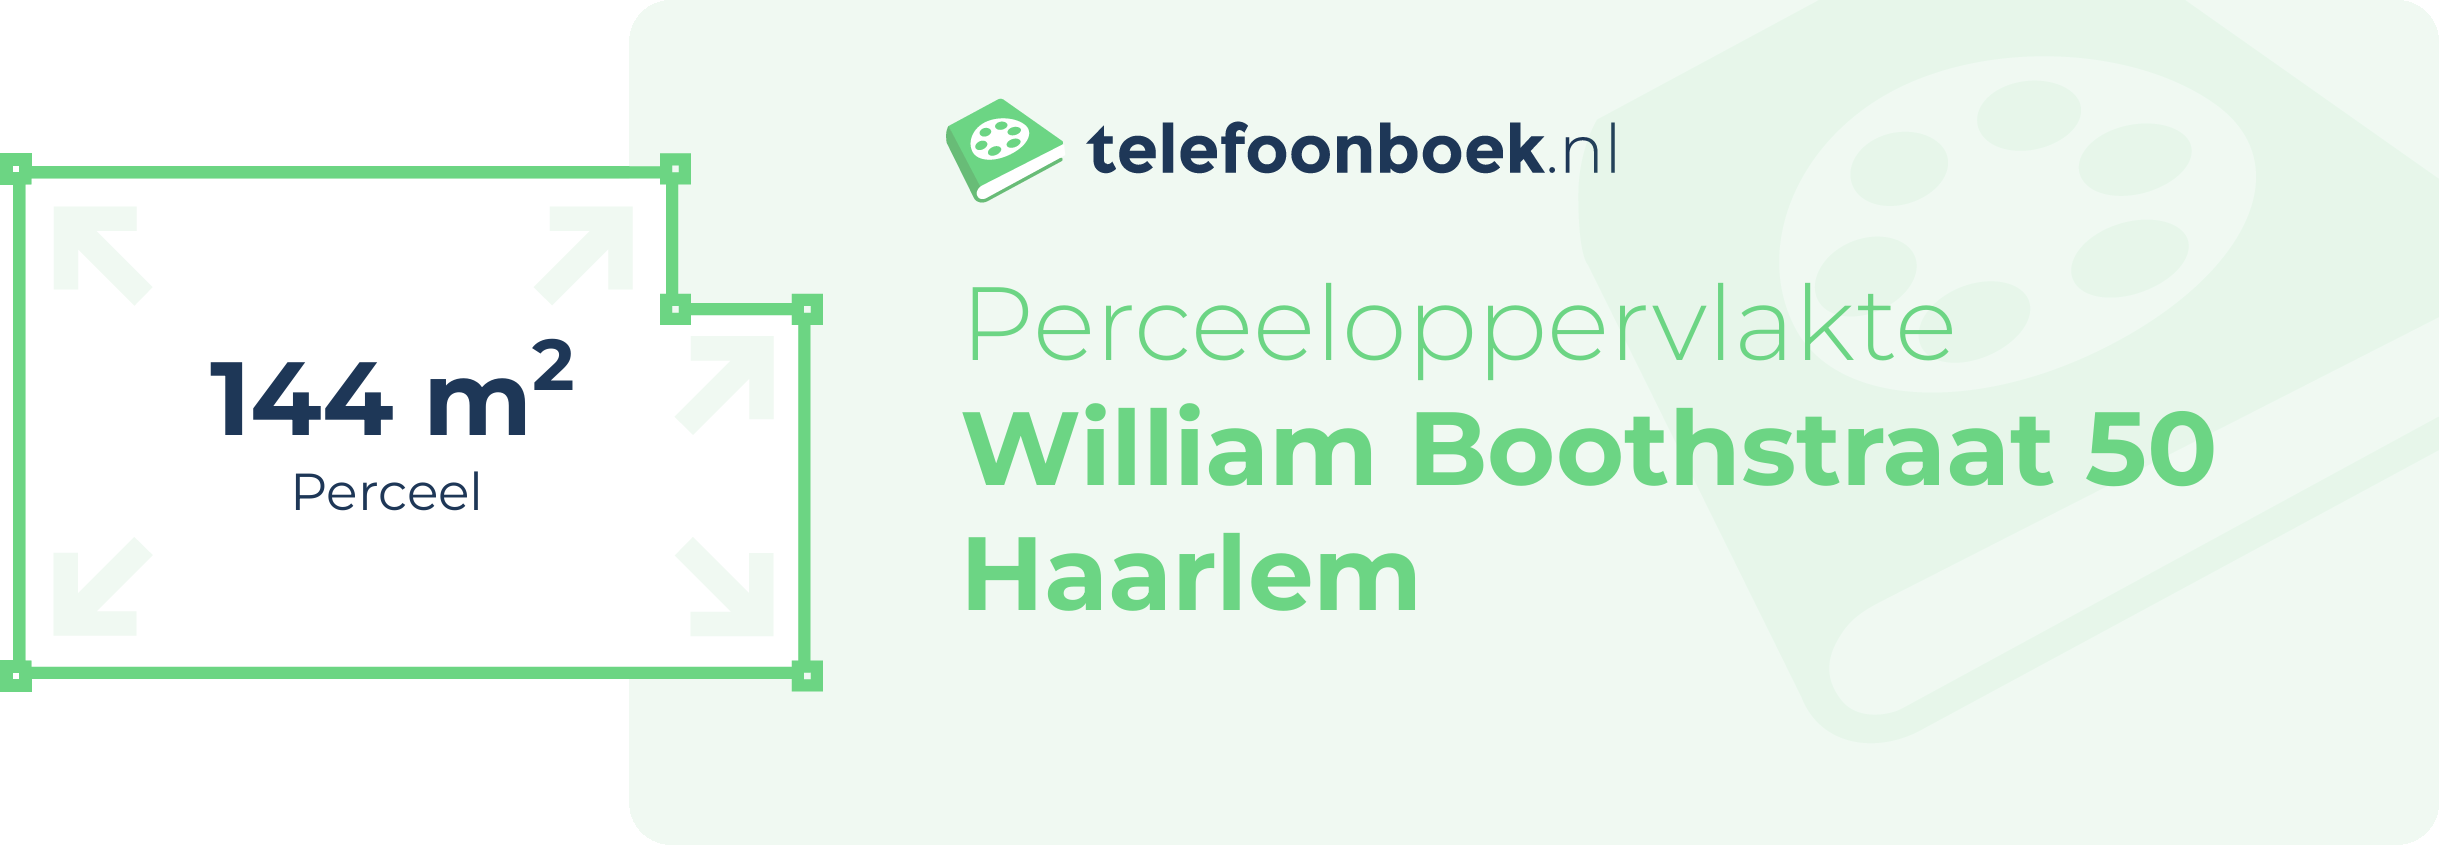 Perceeloppervlakte William Boothstraat 50 Haarlem